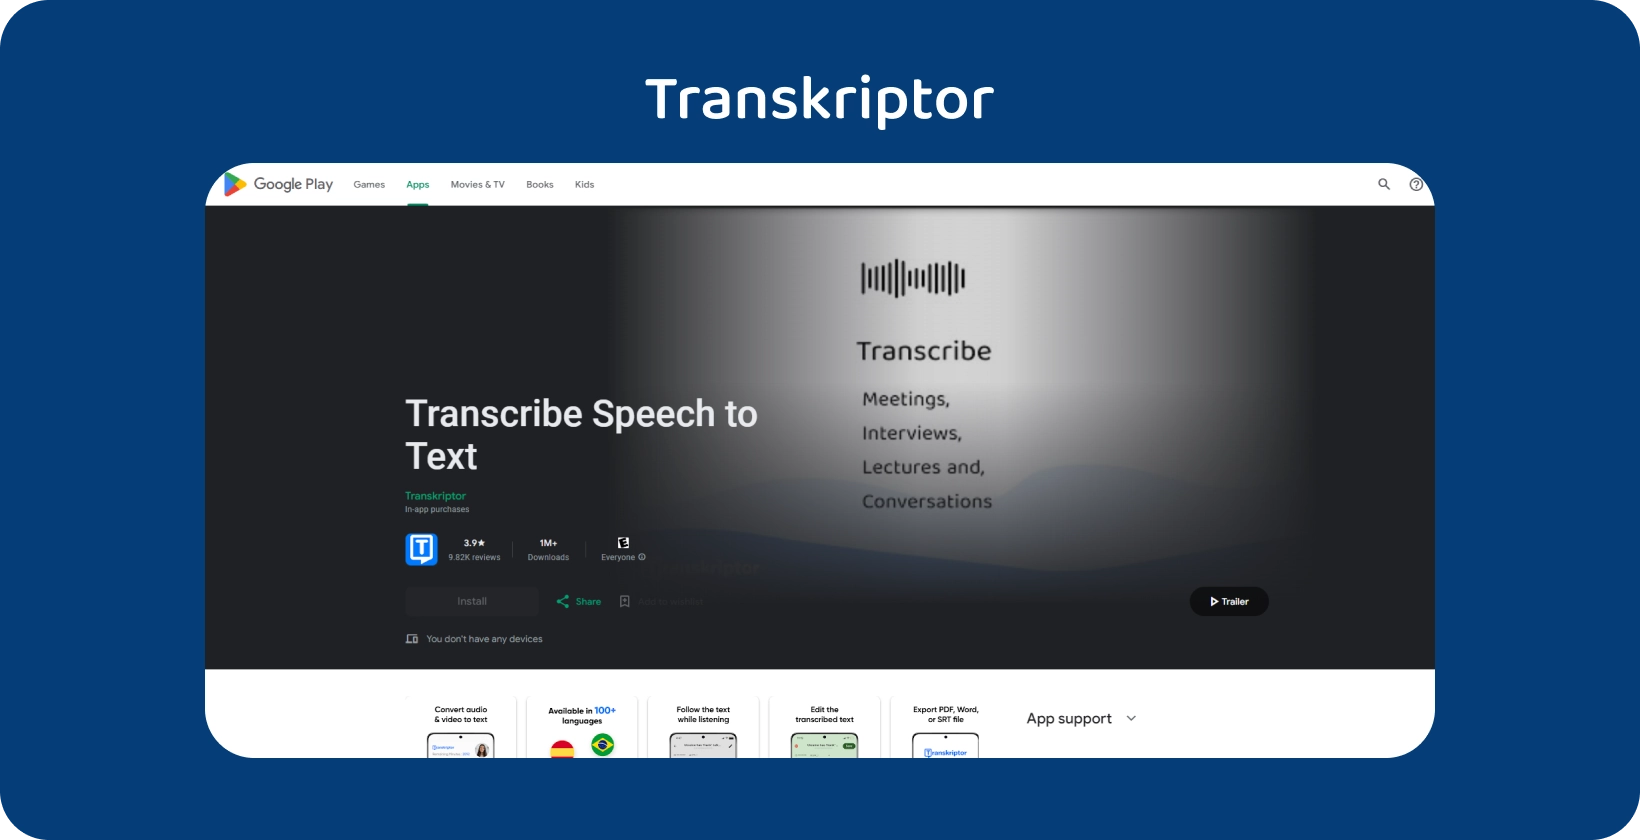 Transkriptor w Google Play, aplikacja do transkrypcji mowy na tekst, idealna na spotkania i wykłady.